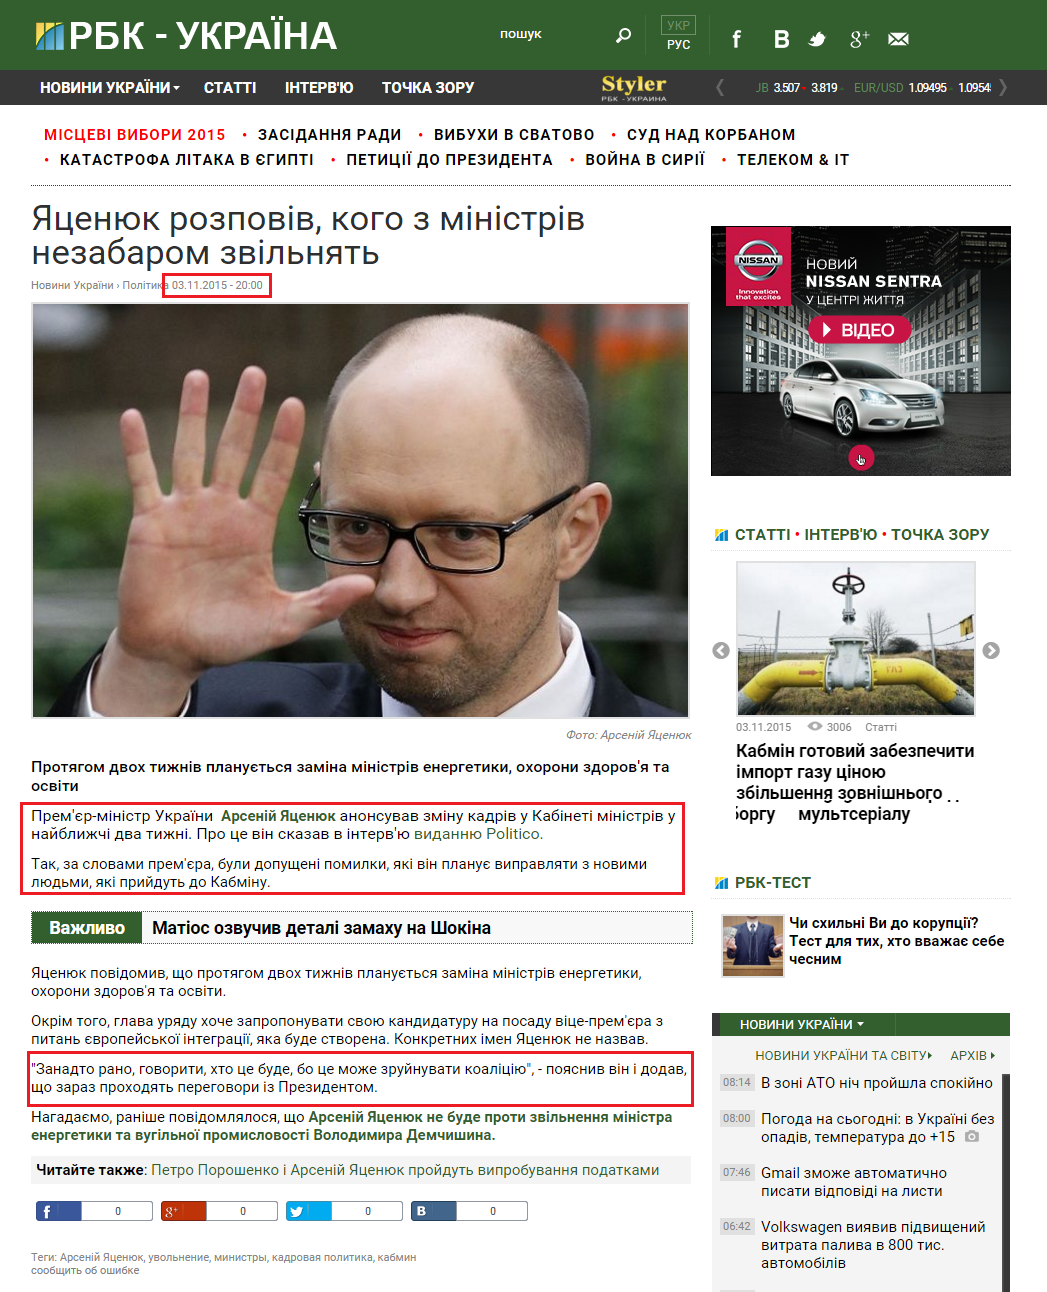 http://www.rbc.ua/ukr/news/tsenyuk-rasskazal-kogo-ministrov-mogut-vskore-1446573492.html